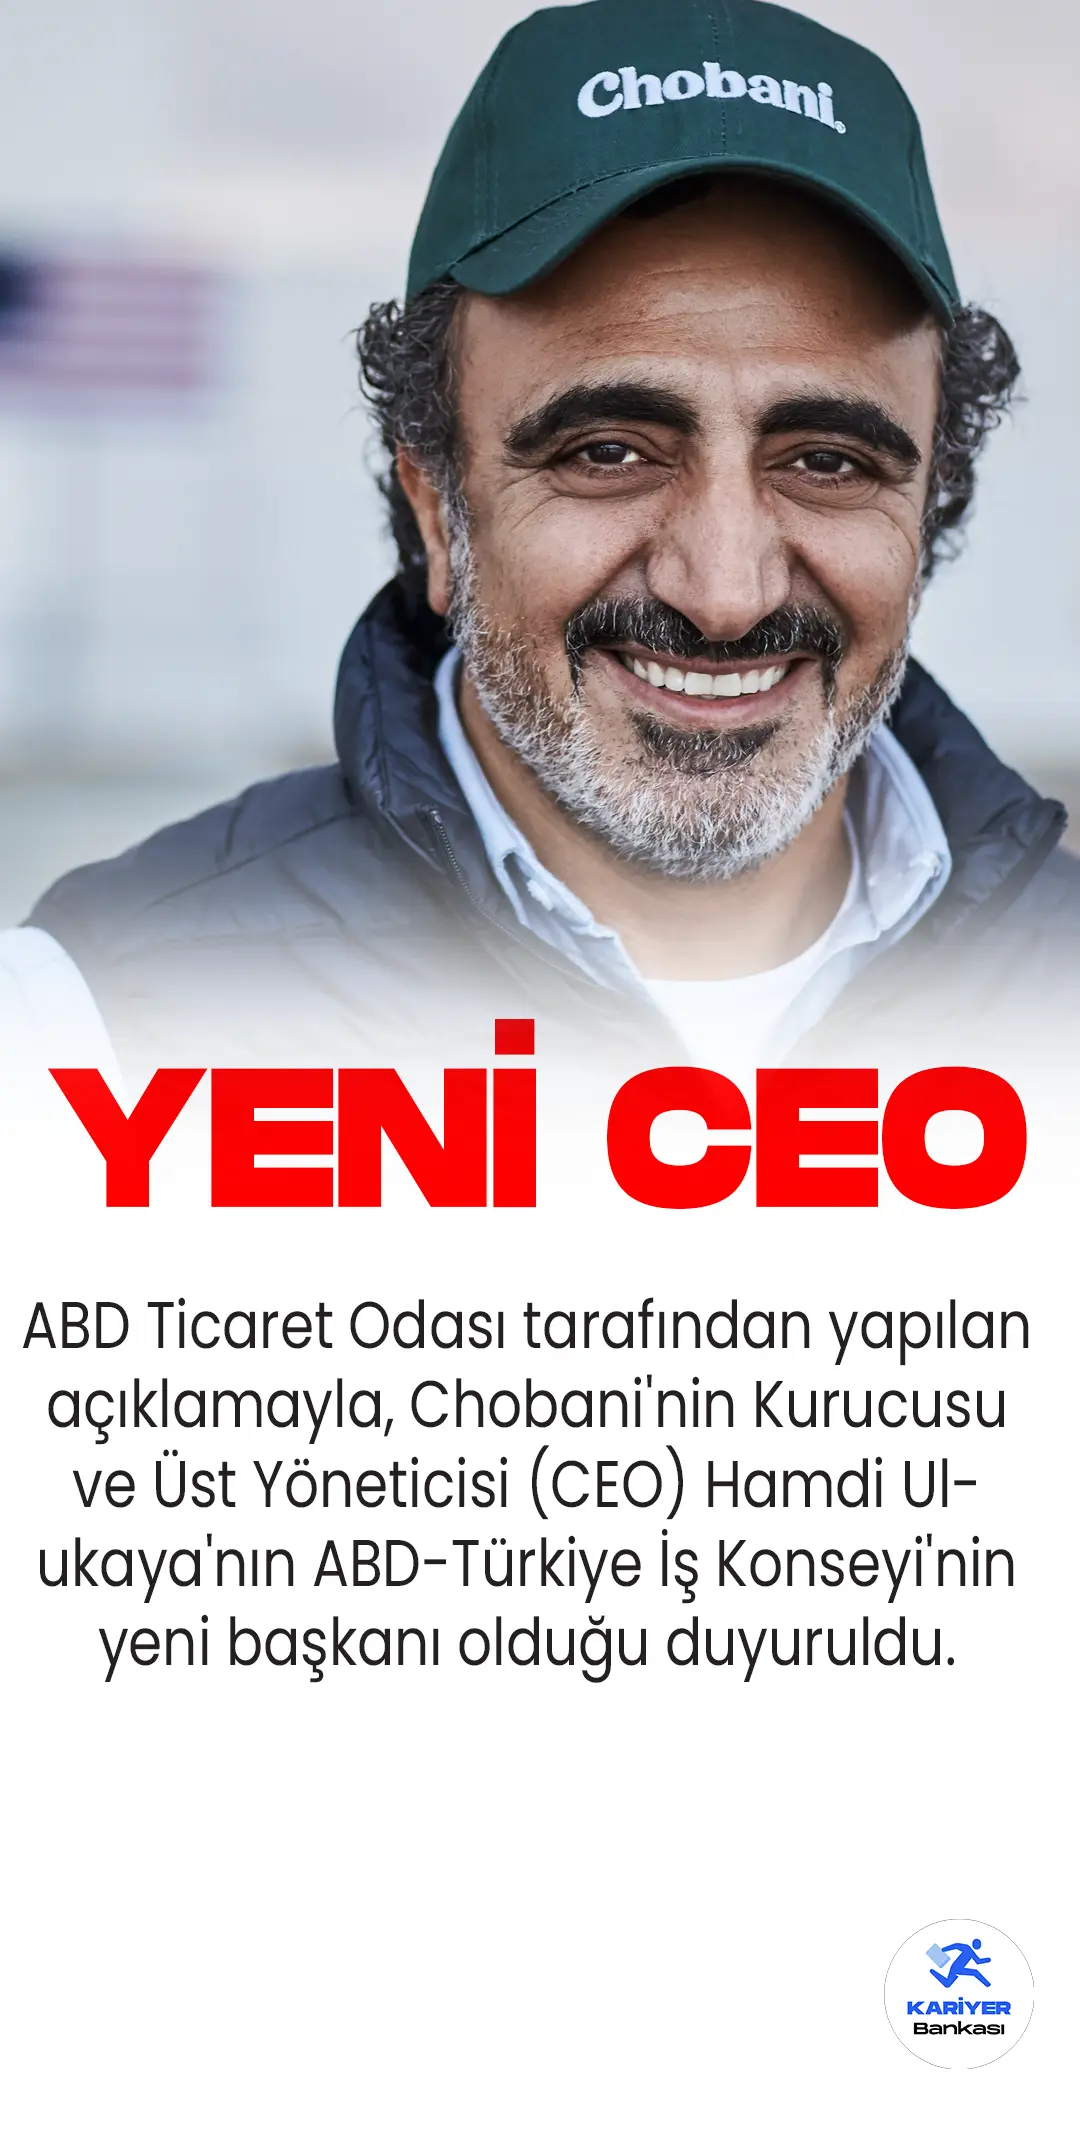 ABD Ticaret Odası tarafından yapılan açıklamayla, Chobani'nin Kurucusu ve Üst Yöneticisi (CEO) Hamdi Ulukaya'nın ABD-Türkiye İş Konseyi'nin yeni başkanı olduğu duyuruldu.